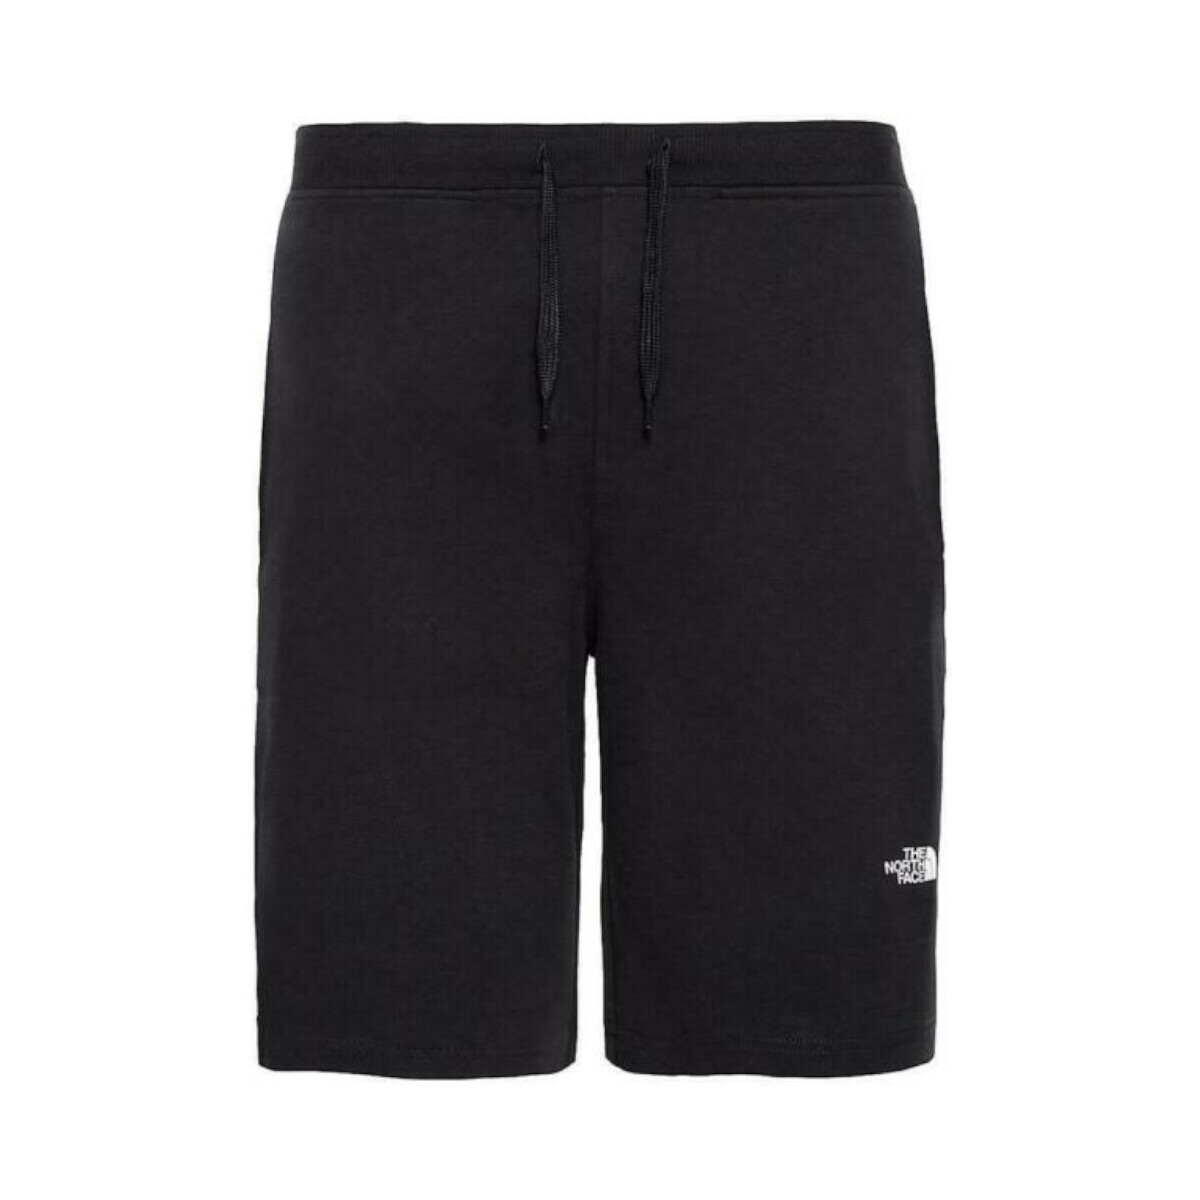 Vêtements Homme Shorts / Bermudas The North Face NF0A3S4F Noir